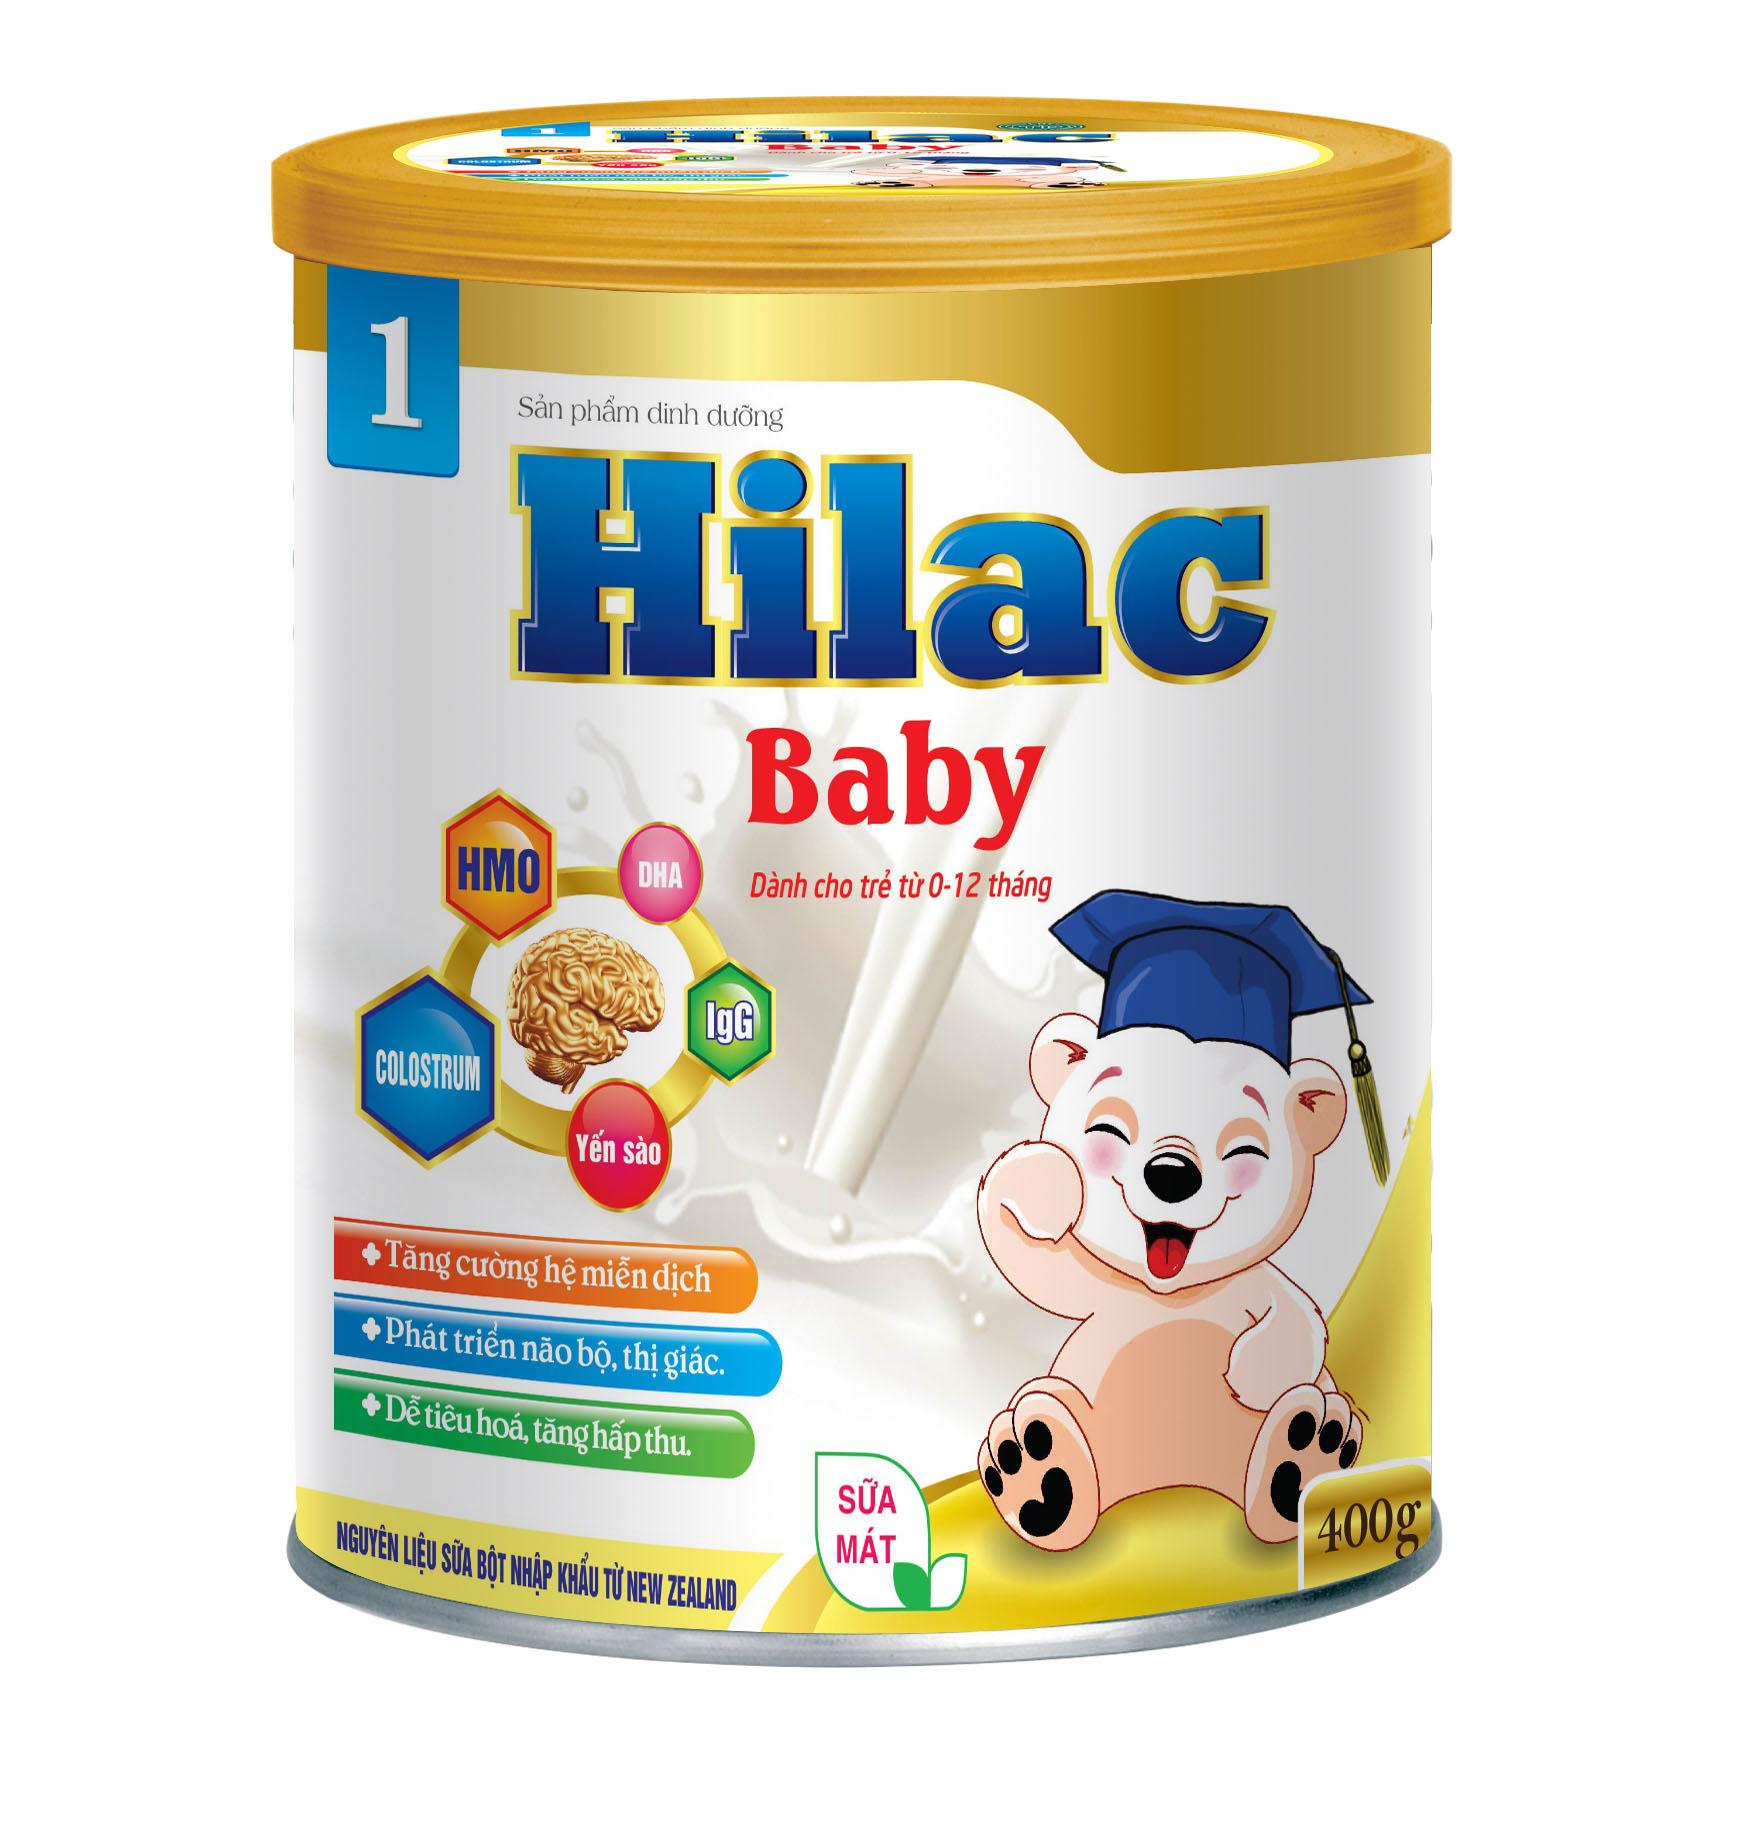 Hilac Baby bé từ 0- 12 tháng - Sữa Bột Hilac - Công Ty TNHH Thương Mại & Dược Phẩm Quốc Tế Thành Phát